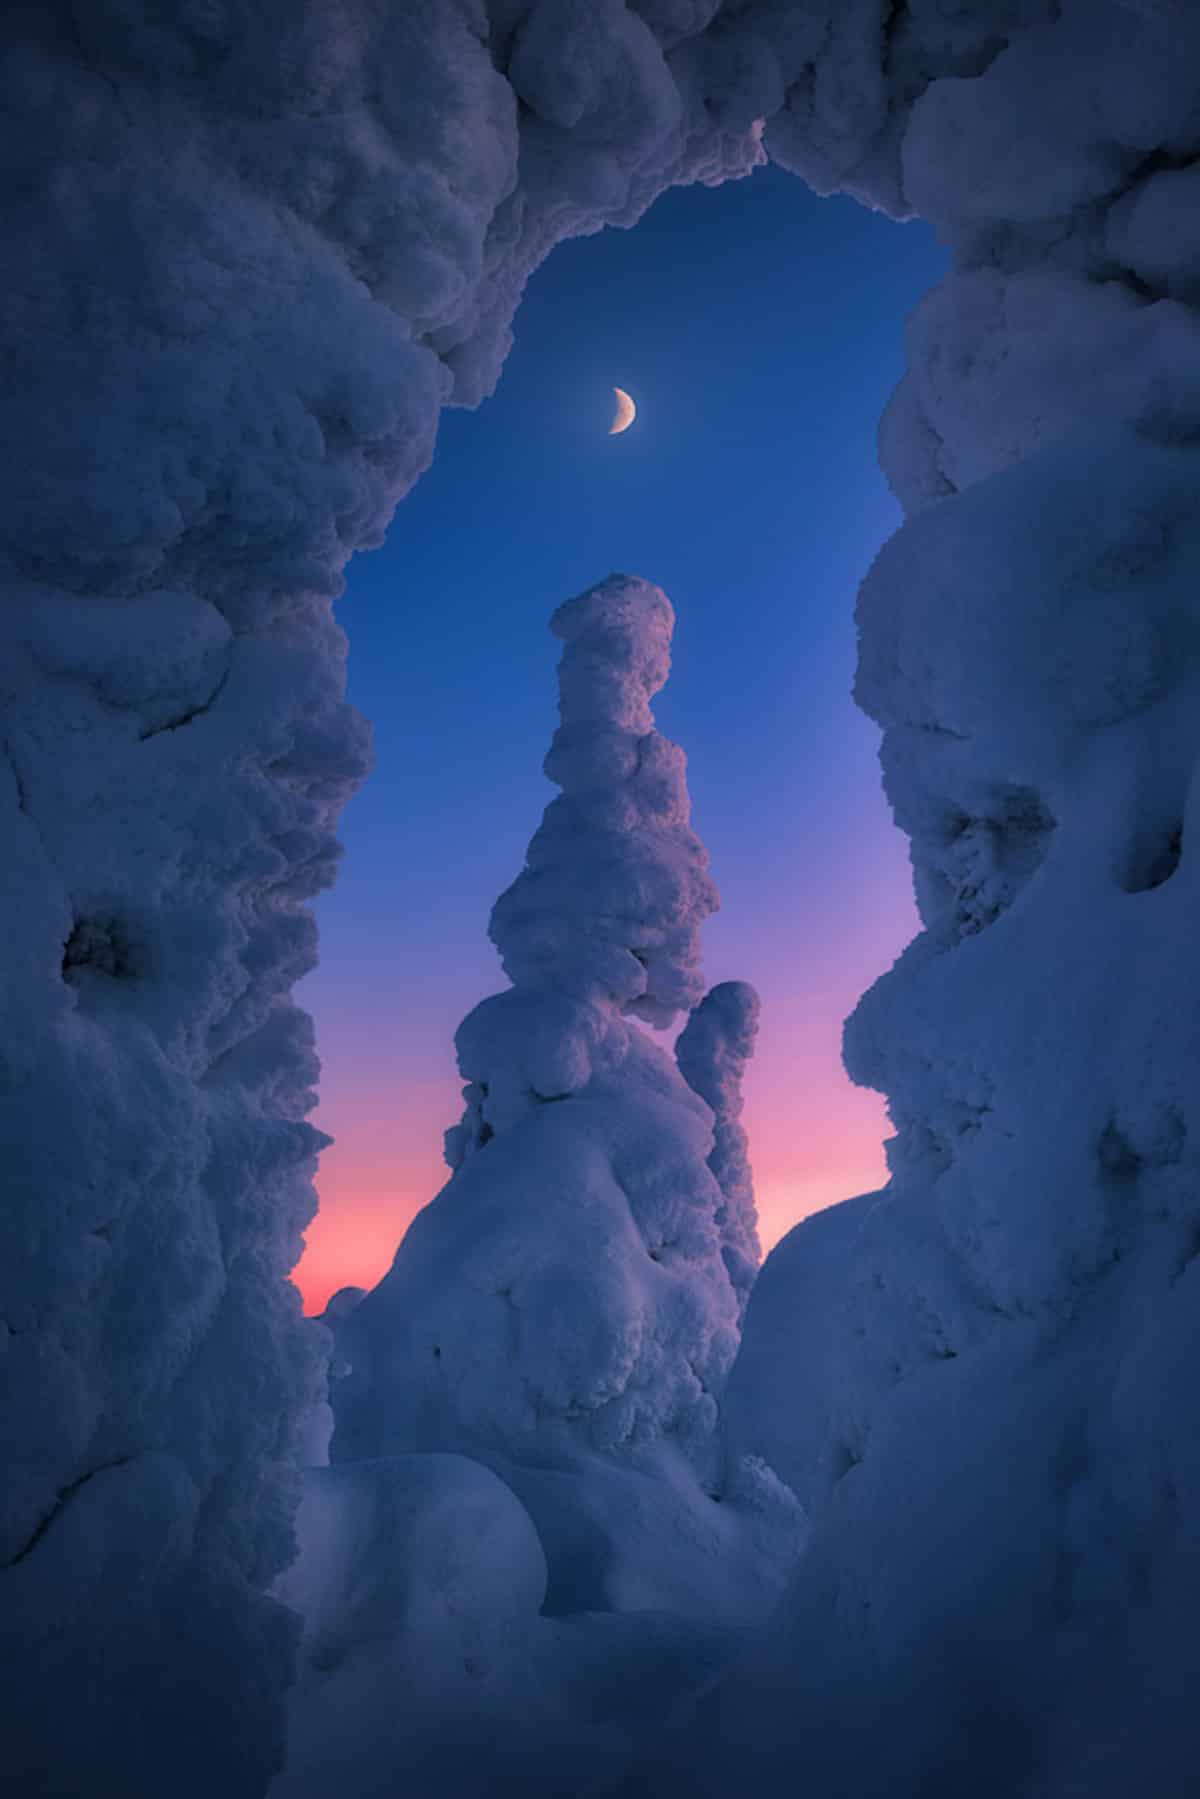 Moonrise in Lapland, Finland.